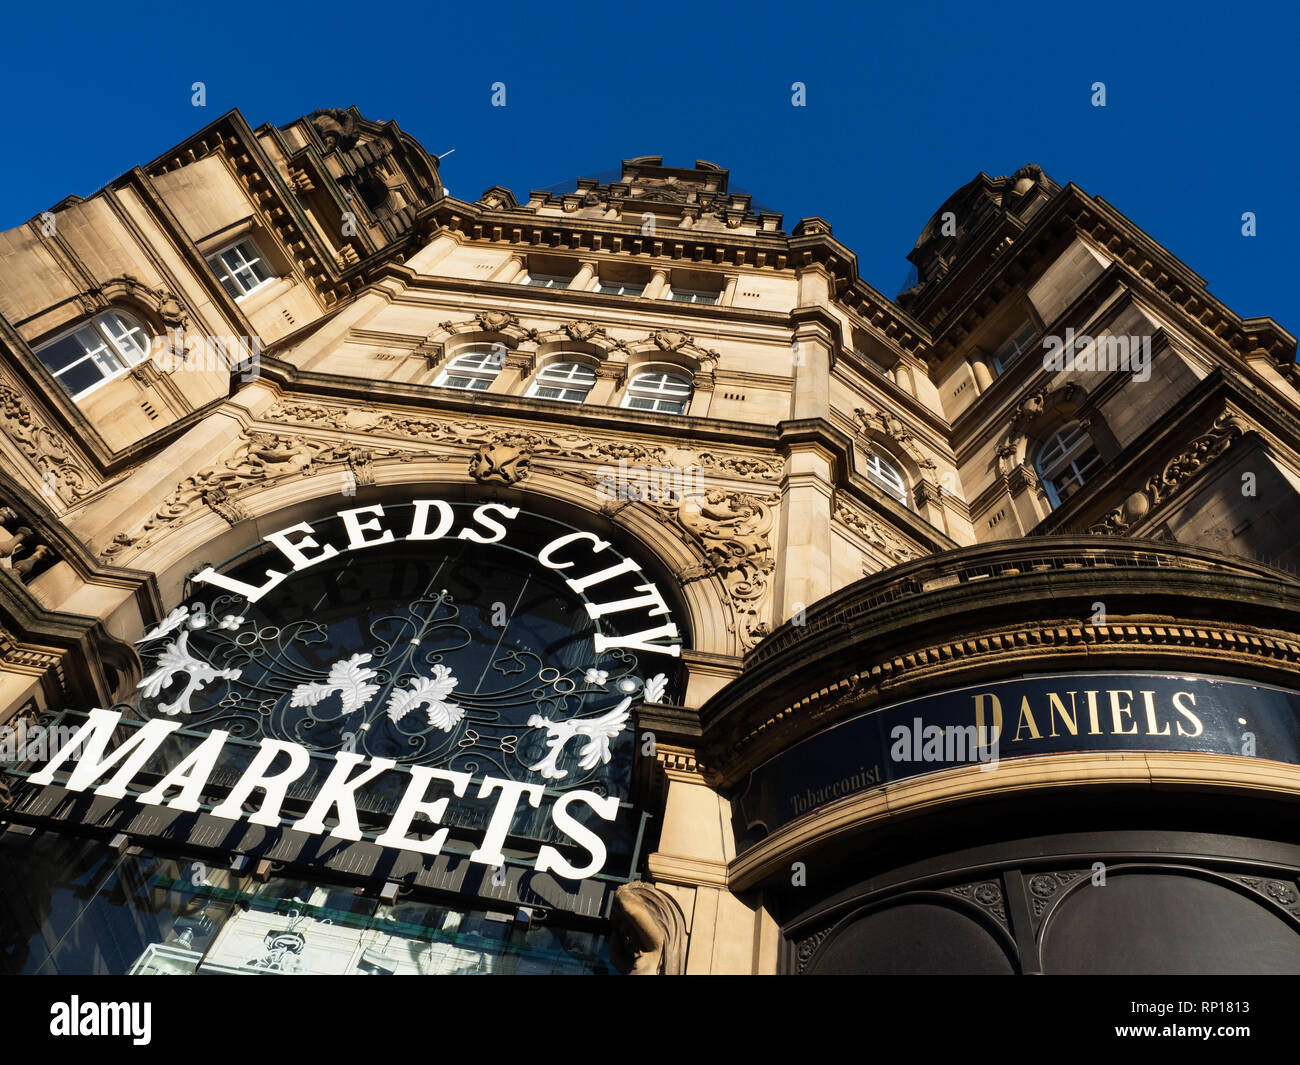 Les marchés de la ville de Leeds entrée de l'édifice au coin de terre et Vicaire Kirkgate Leeds West Yorkshire Angleterre Banque D'Images